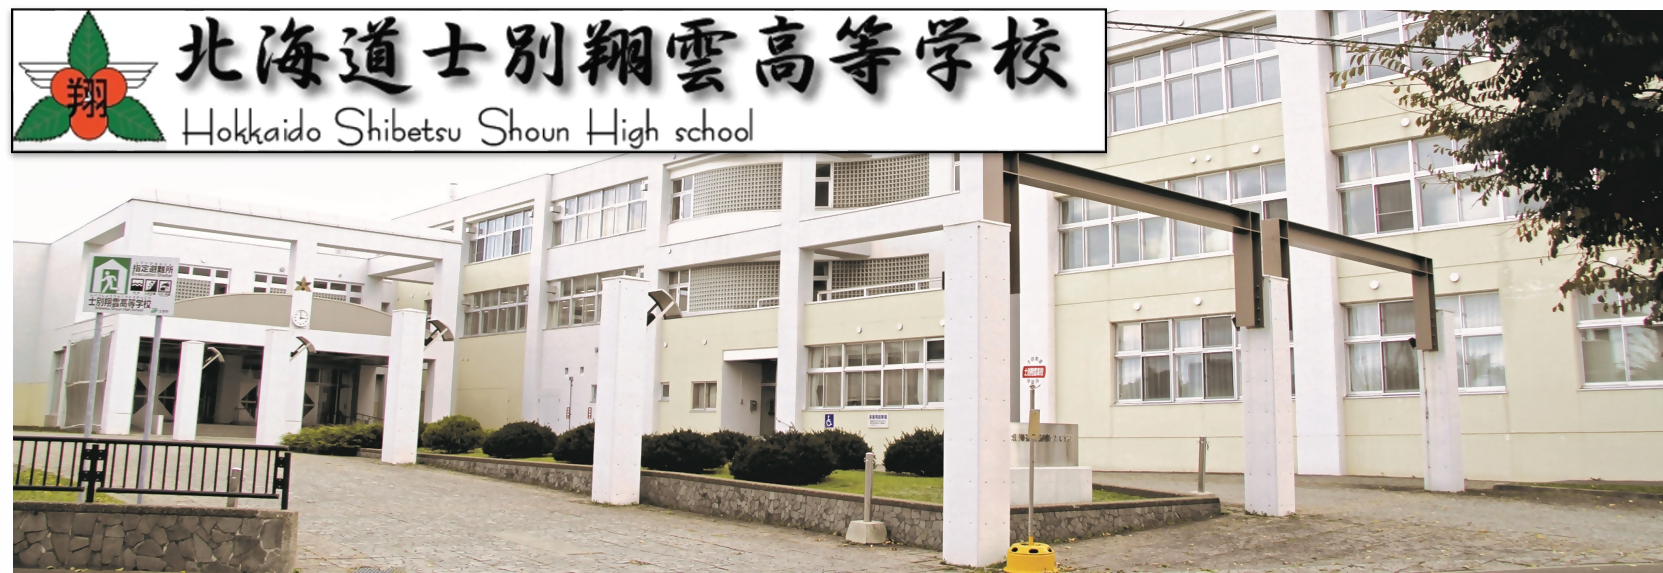 士別翔雲高校校舎